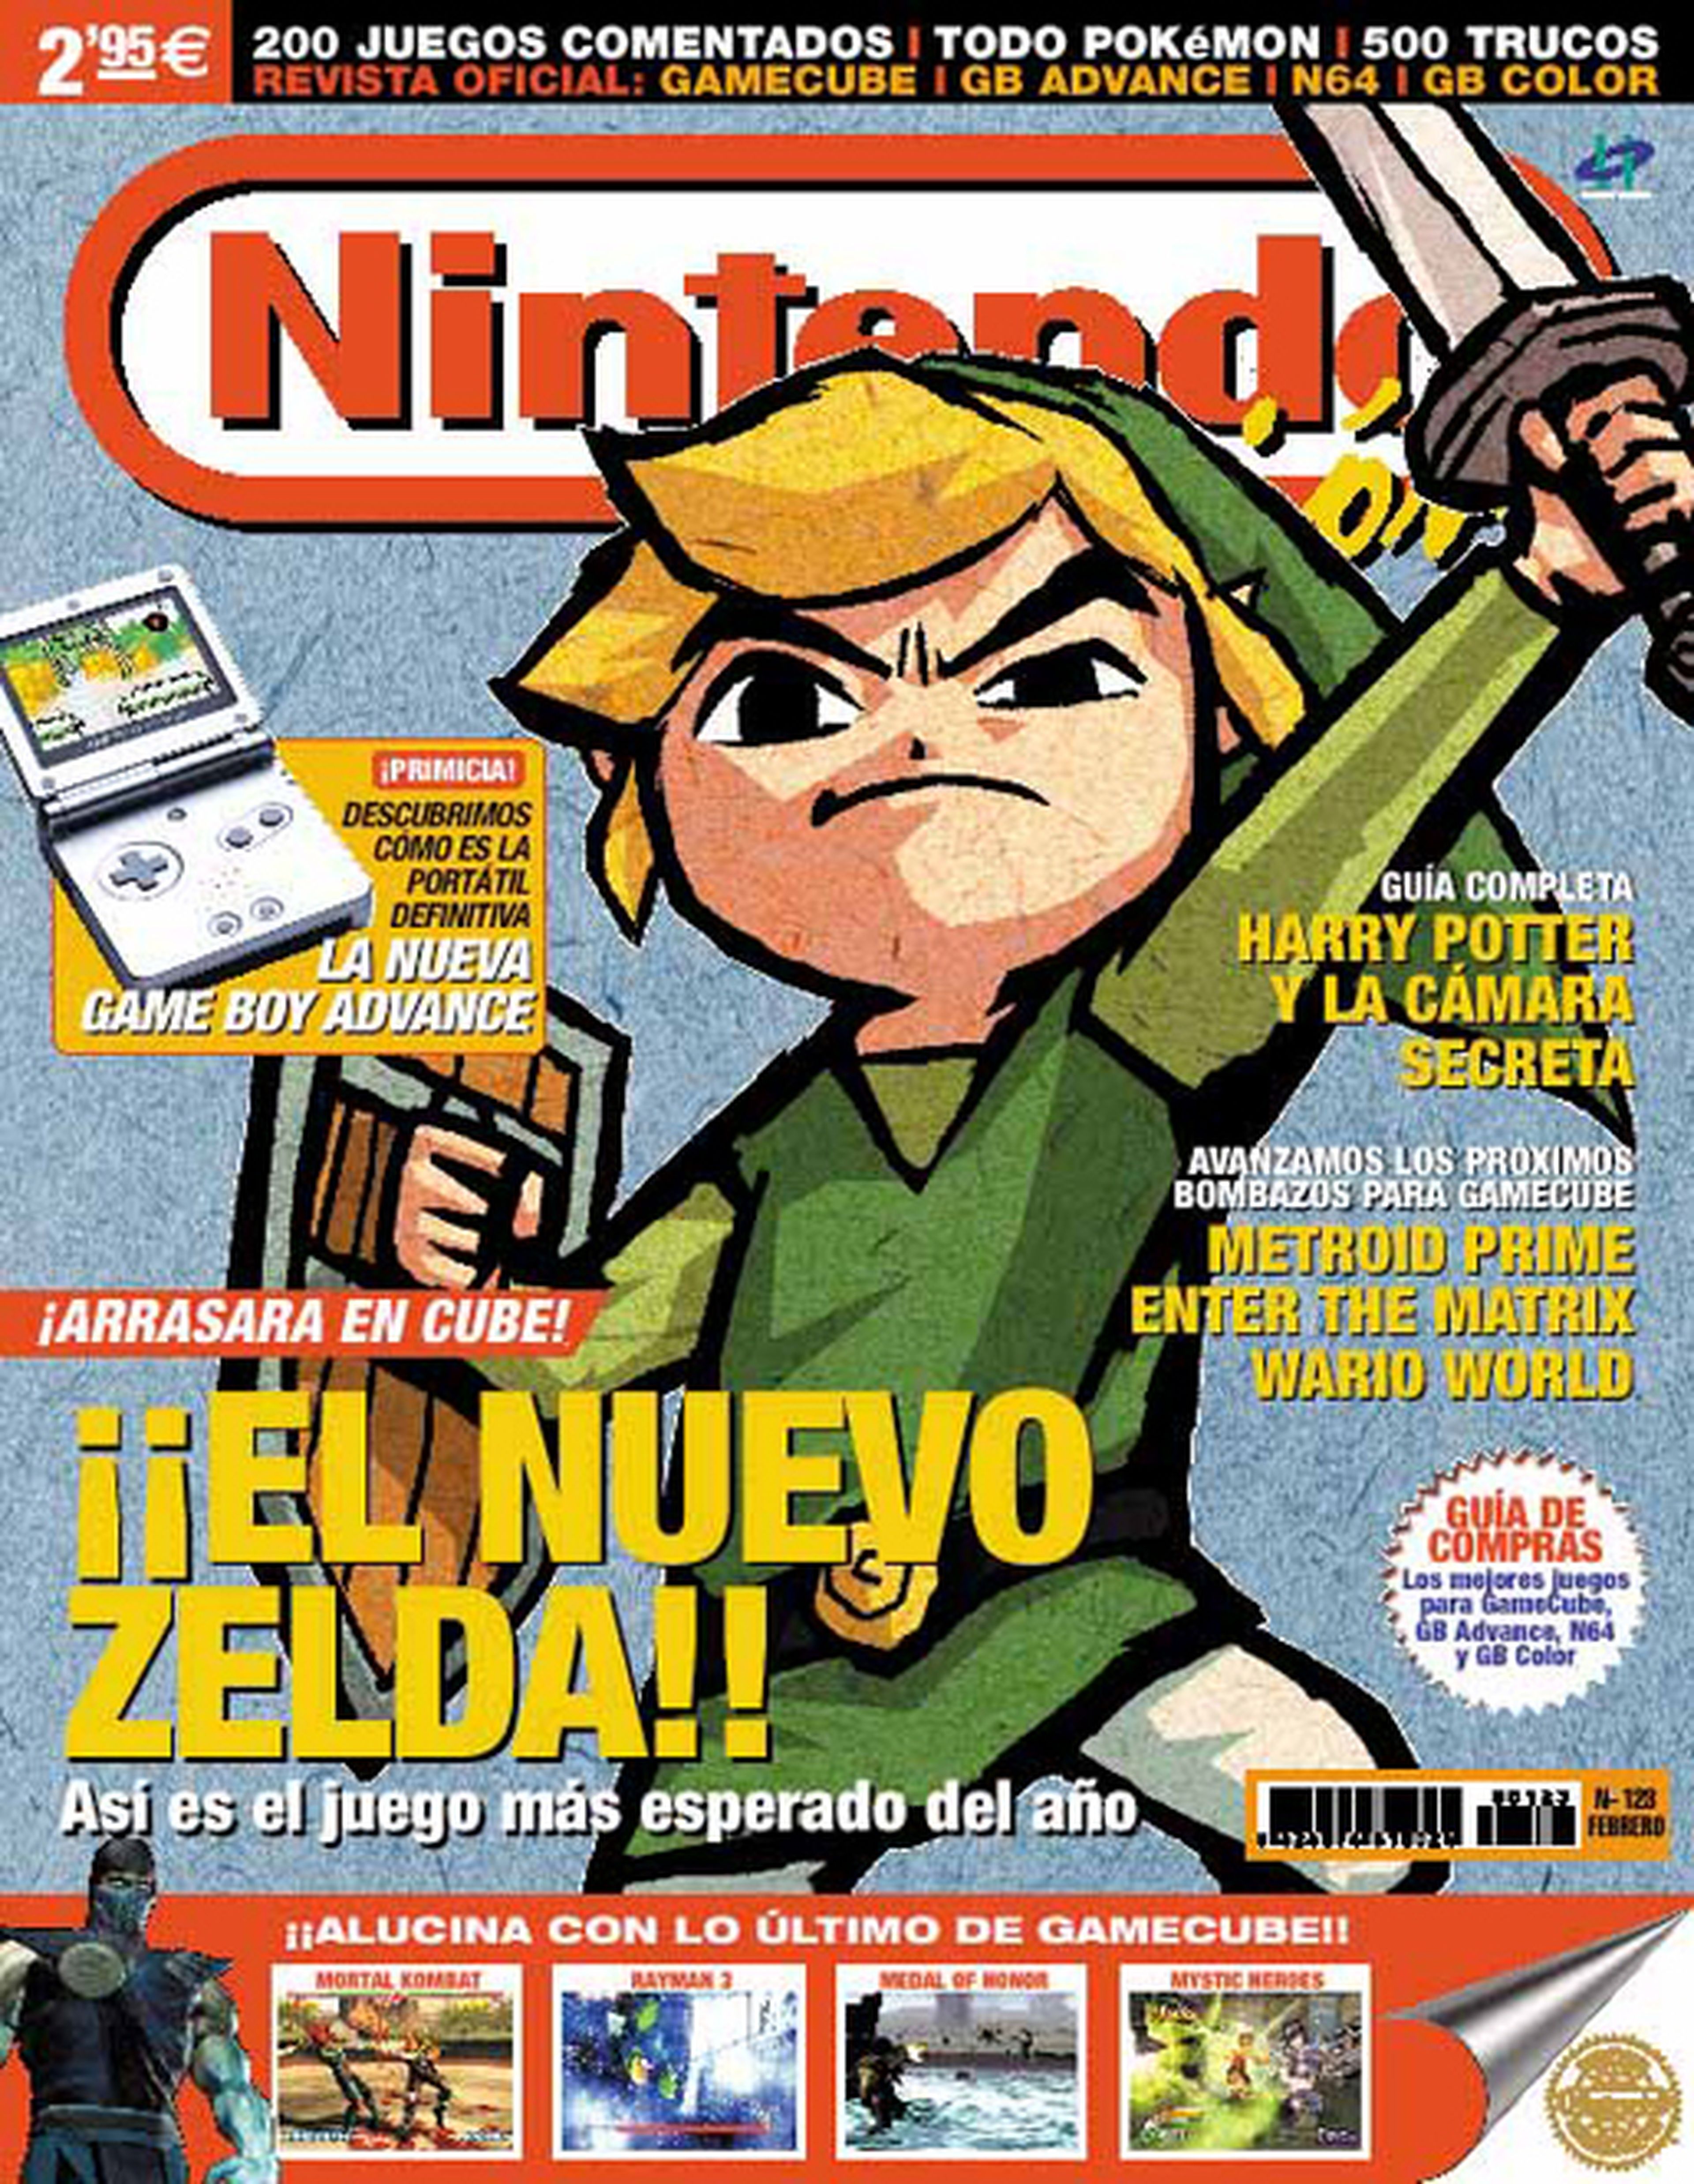 ¡Vota la mejor portada de Nintendo! (VI)